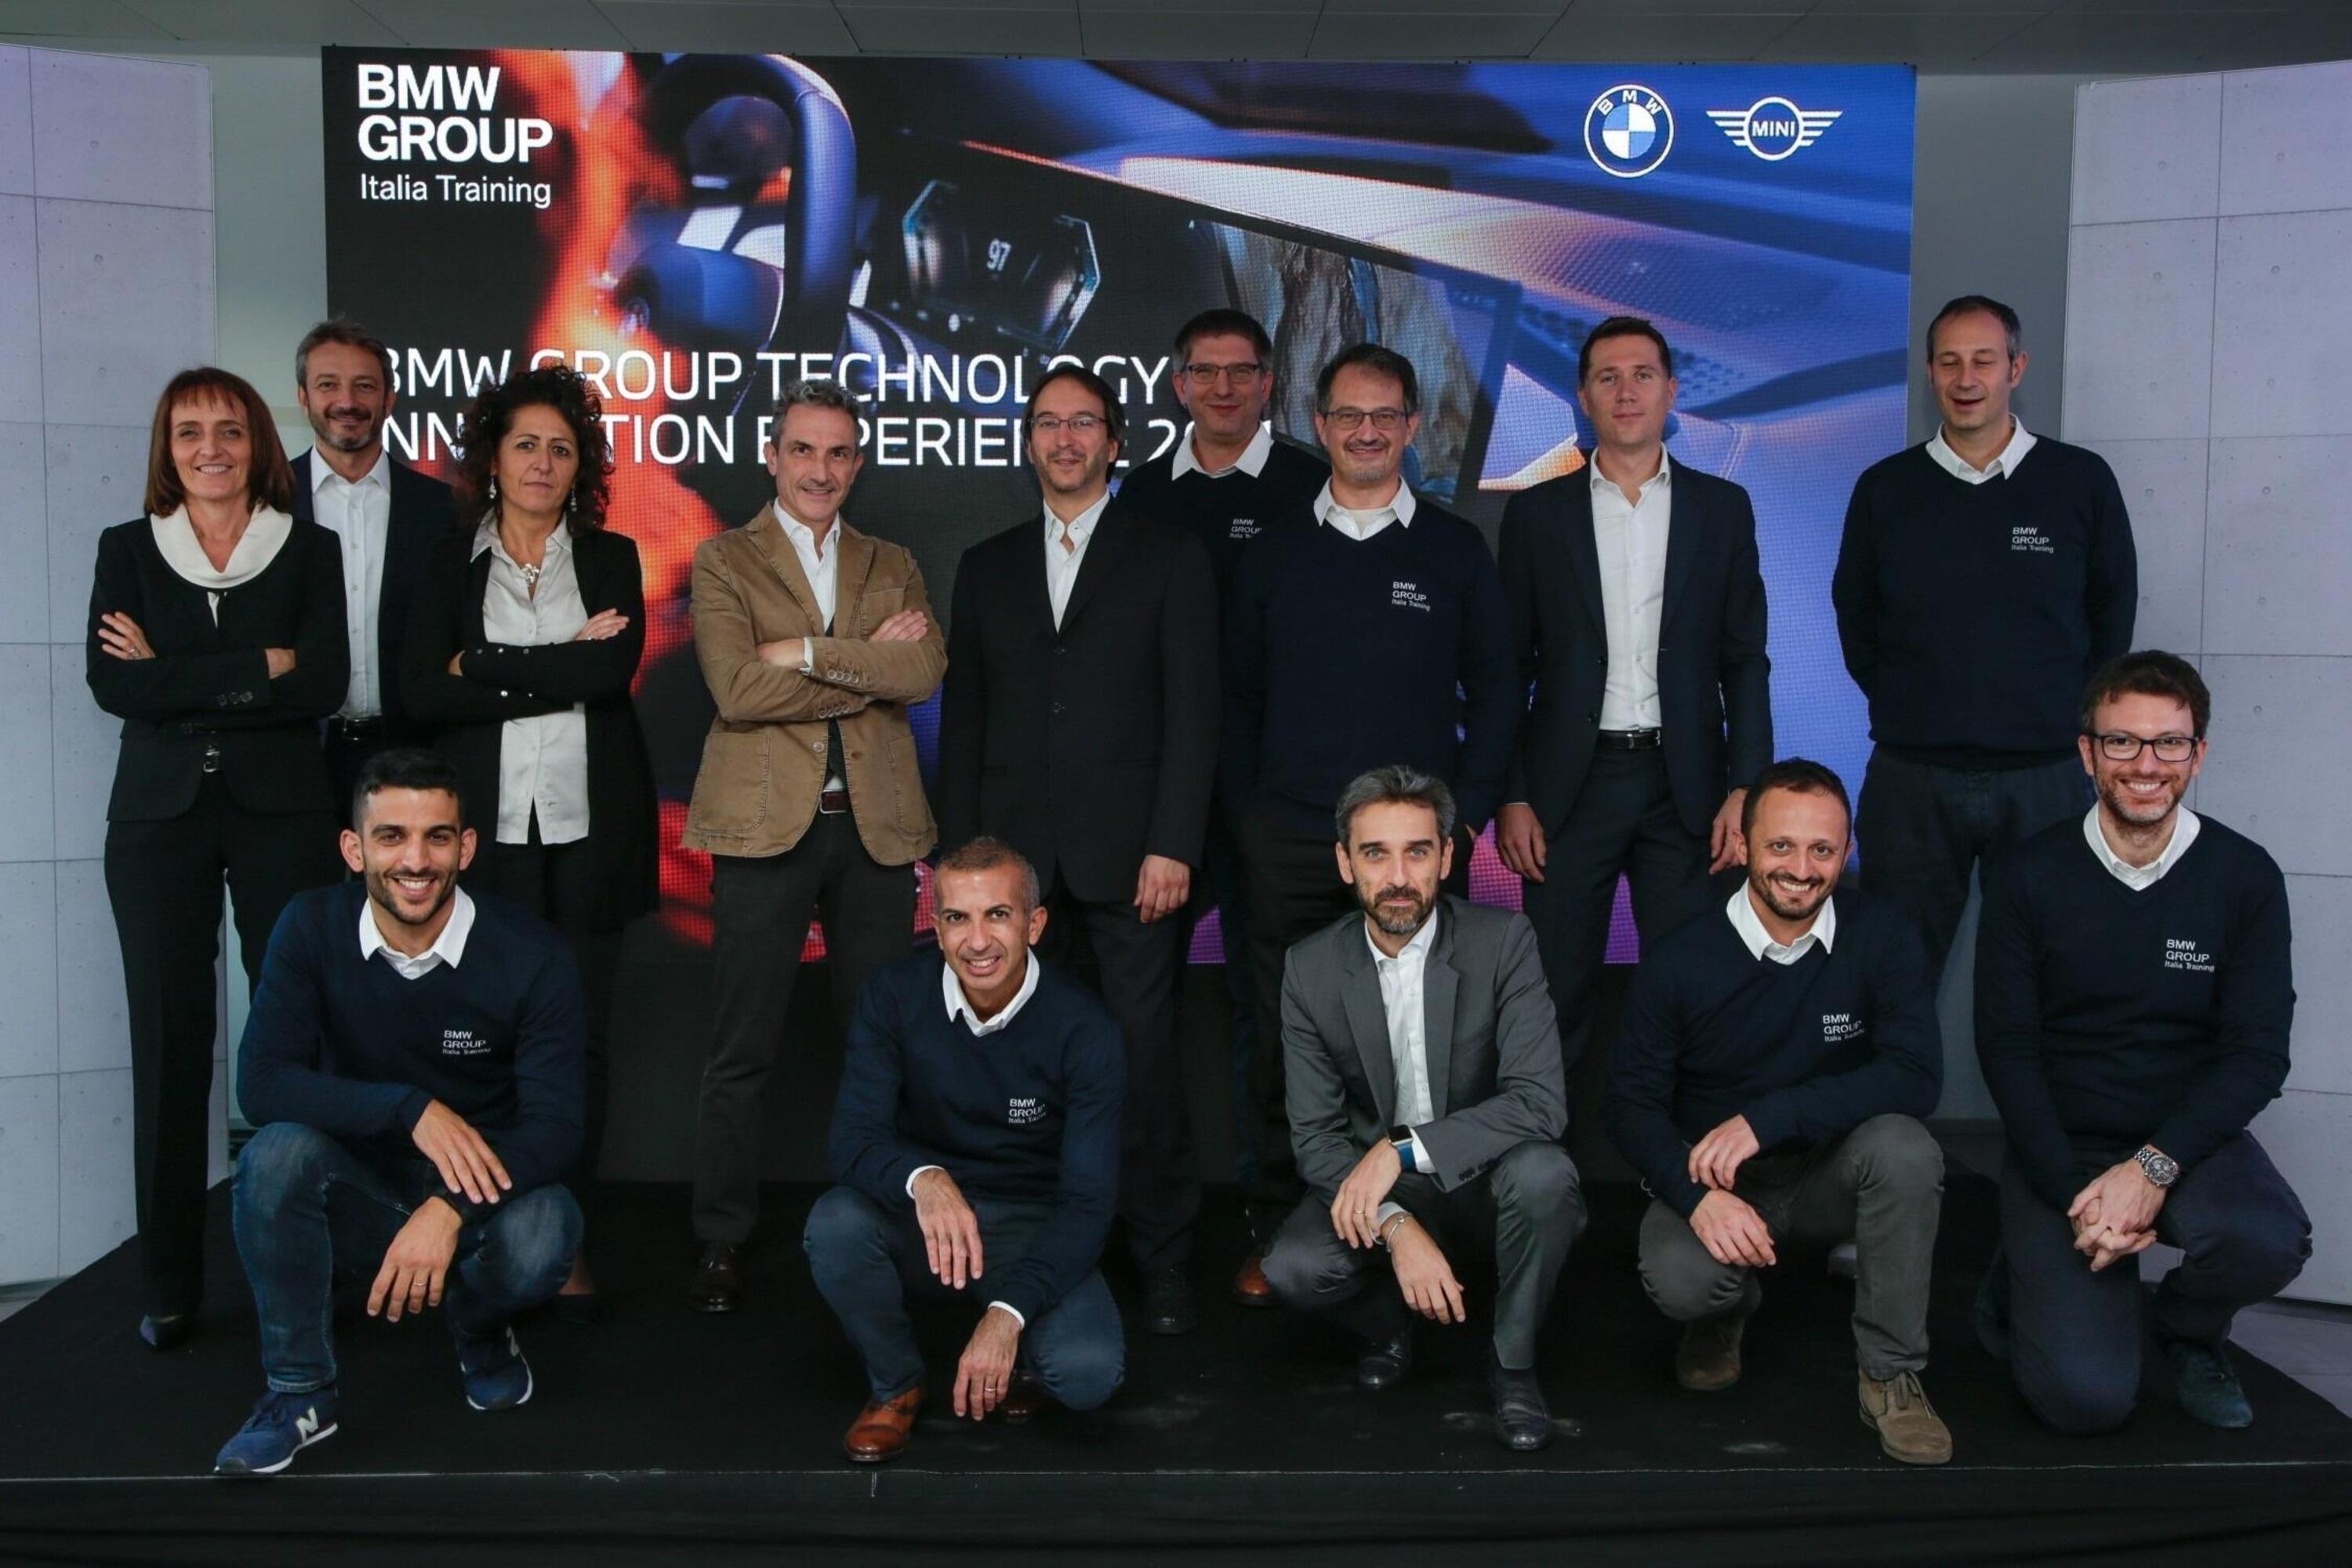 La rinnovata formazione BMW Italia, Persone al centro e corsi ad-hoc